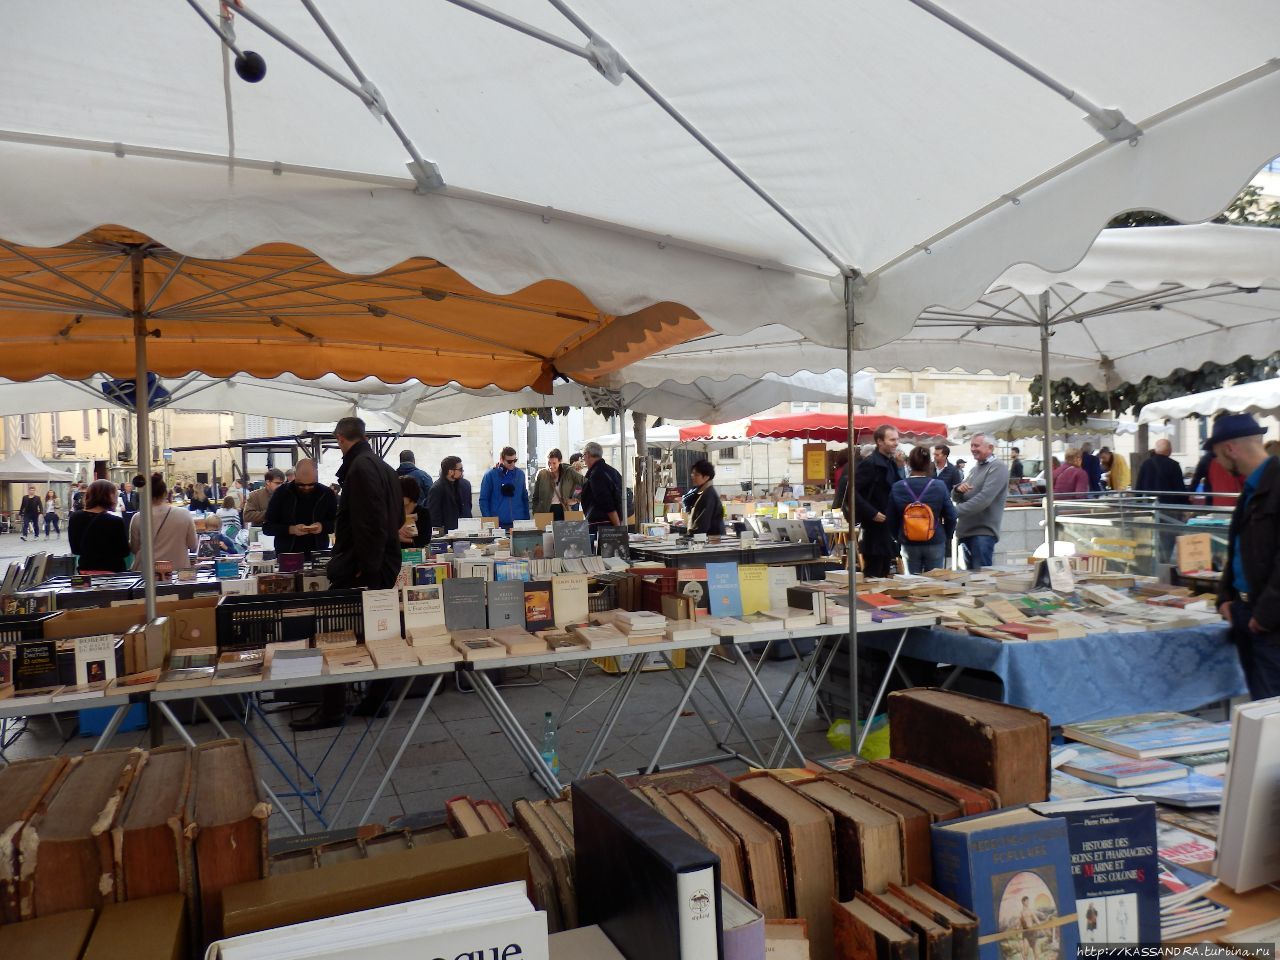 Букинисты Бретани. Книжный рынок в Ренне Ренн, Франция